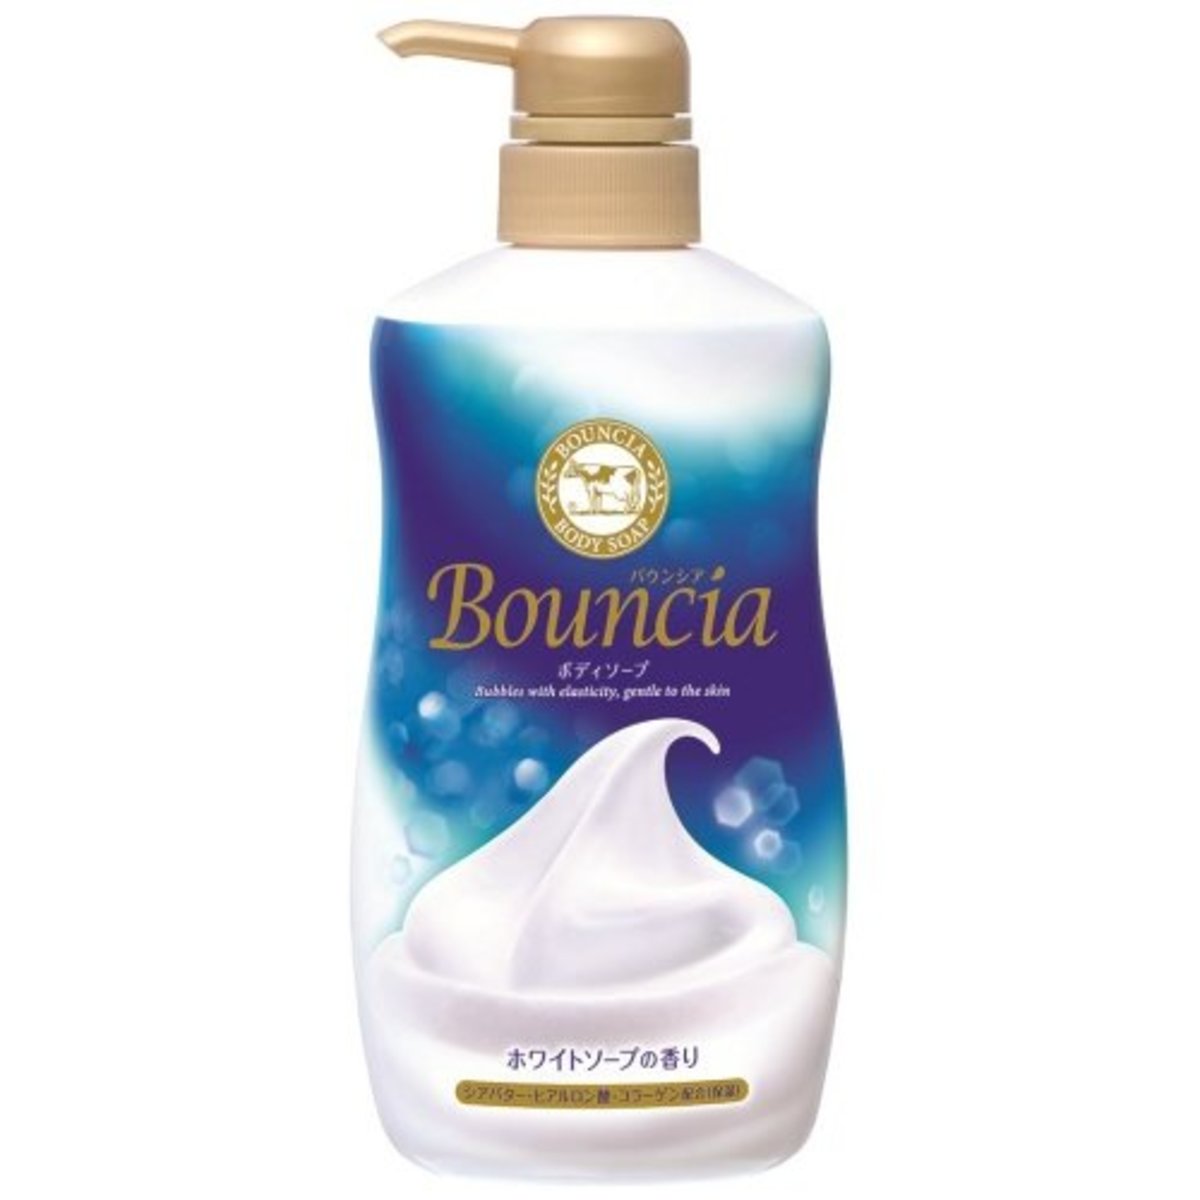 COW 牛乳石鹼| Bouncia牛乳美白保濕泡泡沐浴乳(牛奶味) 500ml (4901525008259) (平行進口) | HKTVmall  香港最大網購平台